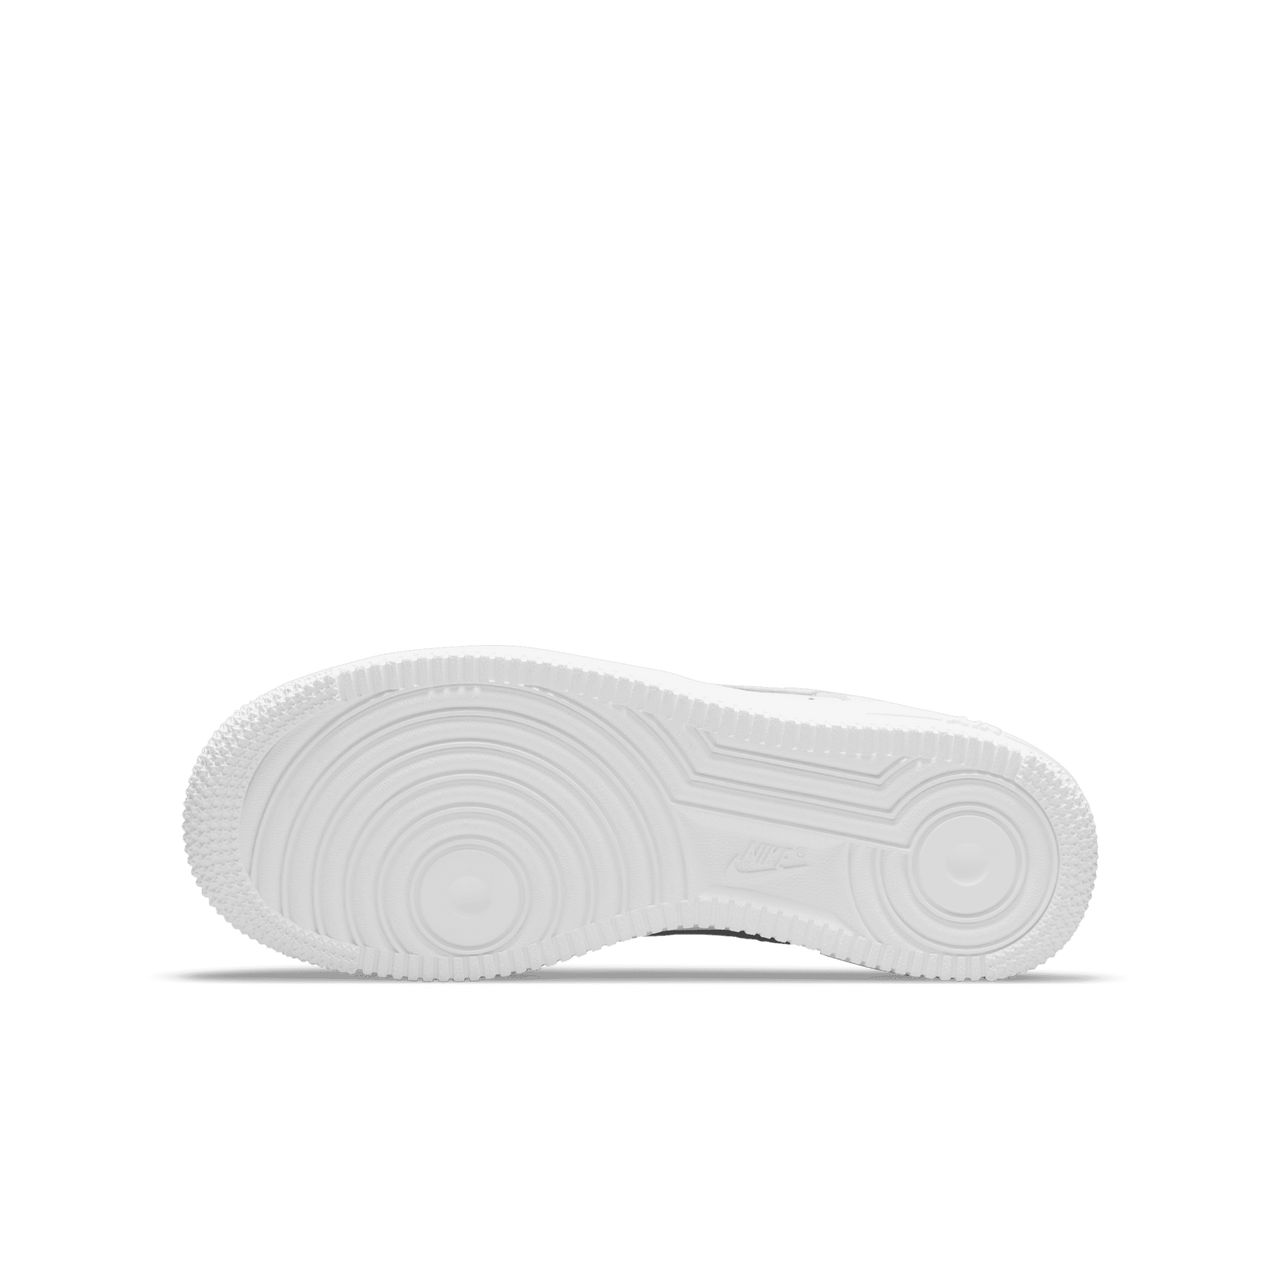 Nike Air Force 1 Schuh für ältere Kinder - Weiß